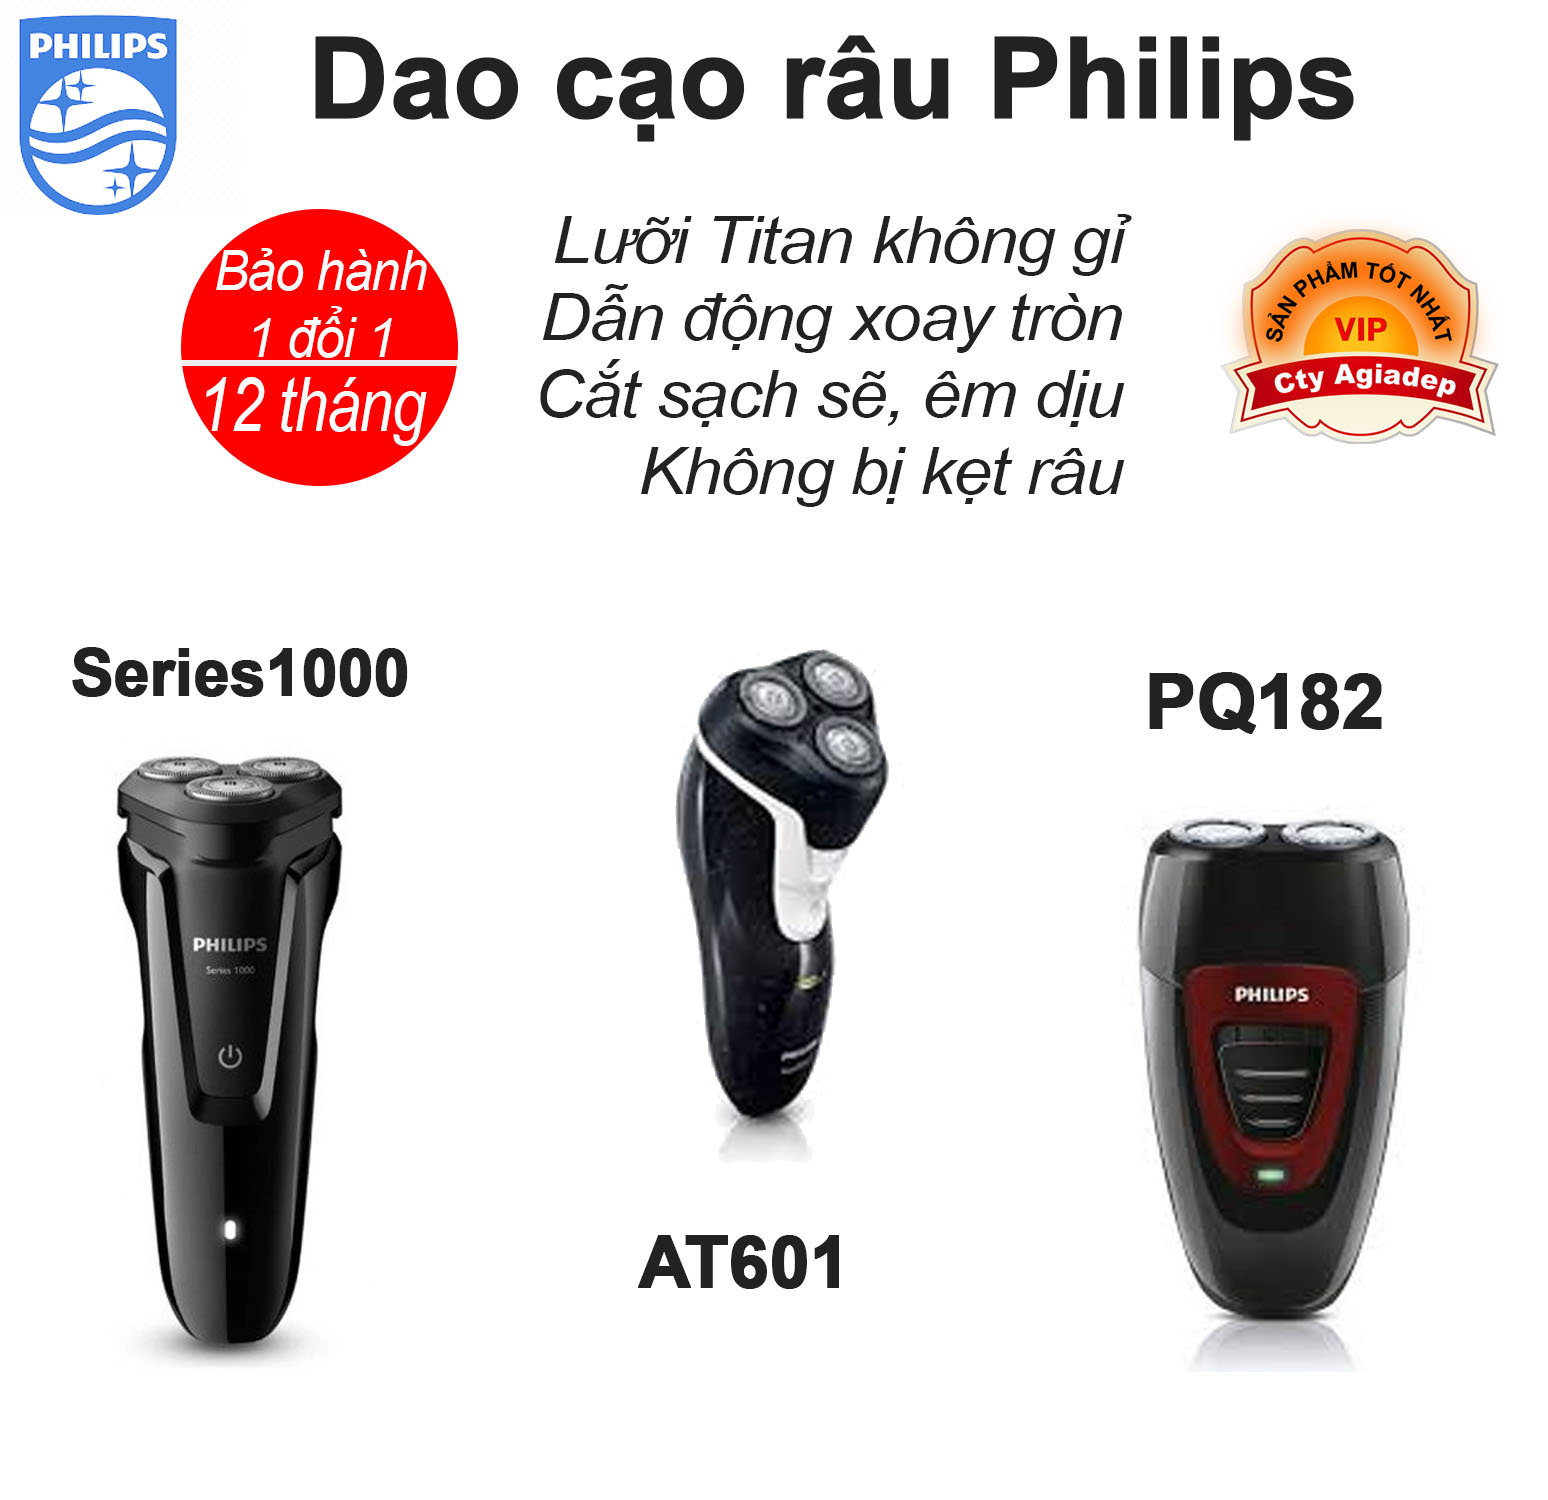 Tổng hợp Dao cạo râu Philips cao cấp Pq182 Siries1000 AT610 lưỡi xoay